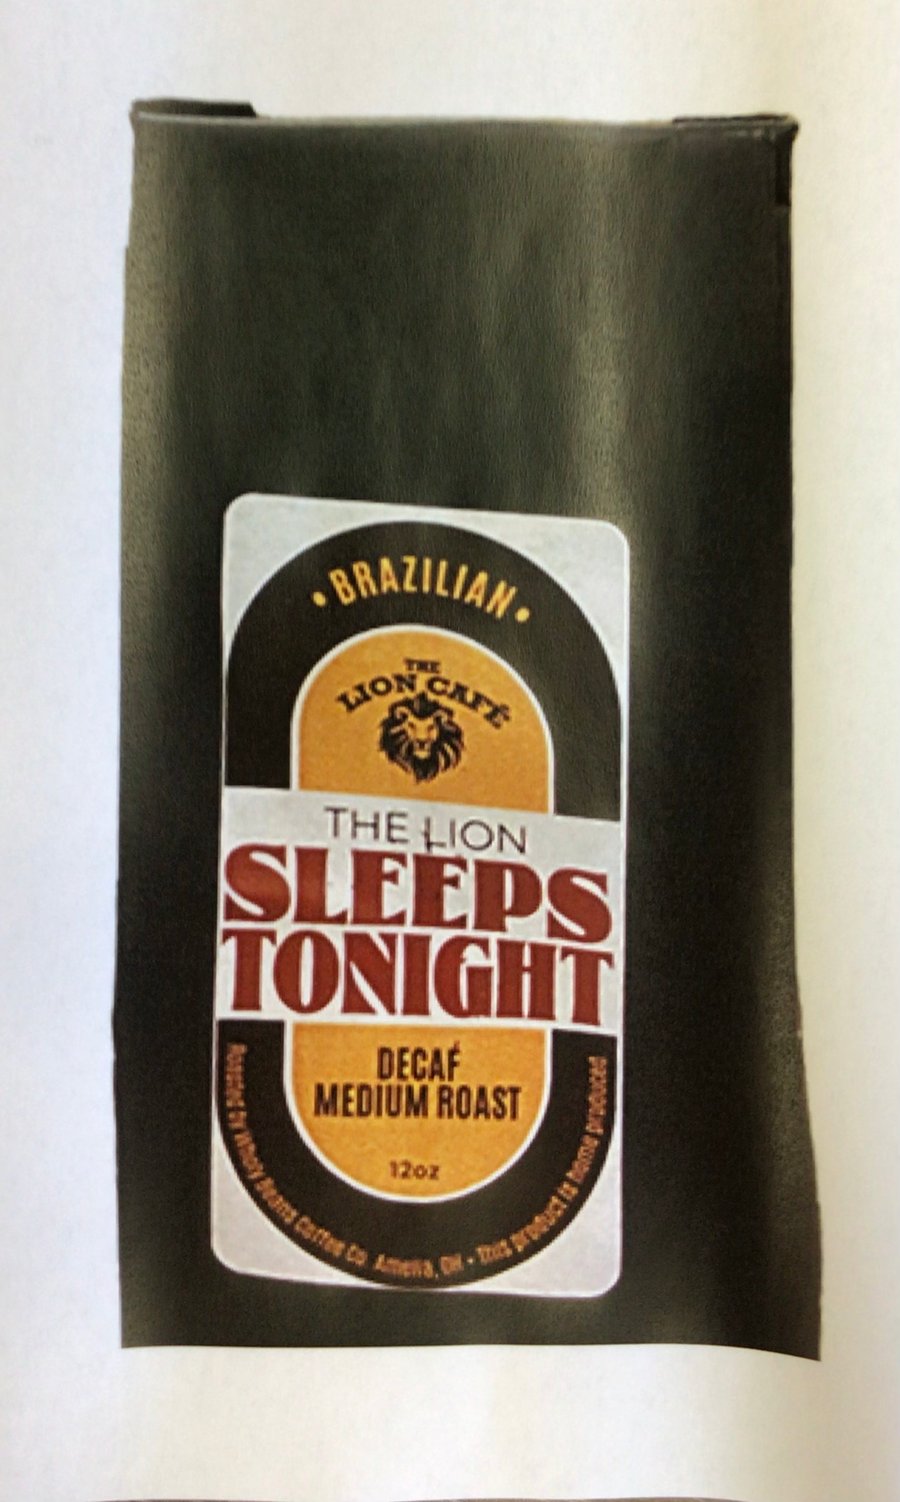 Image of The Lion Sleeps Tonight Decaf medium roast coffee